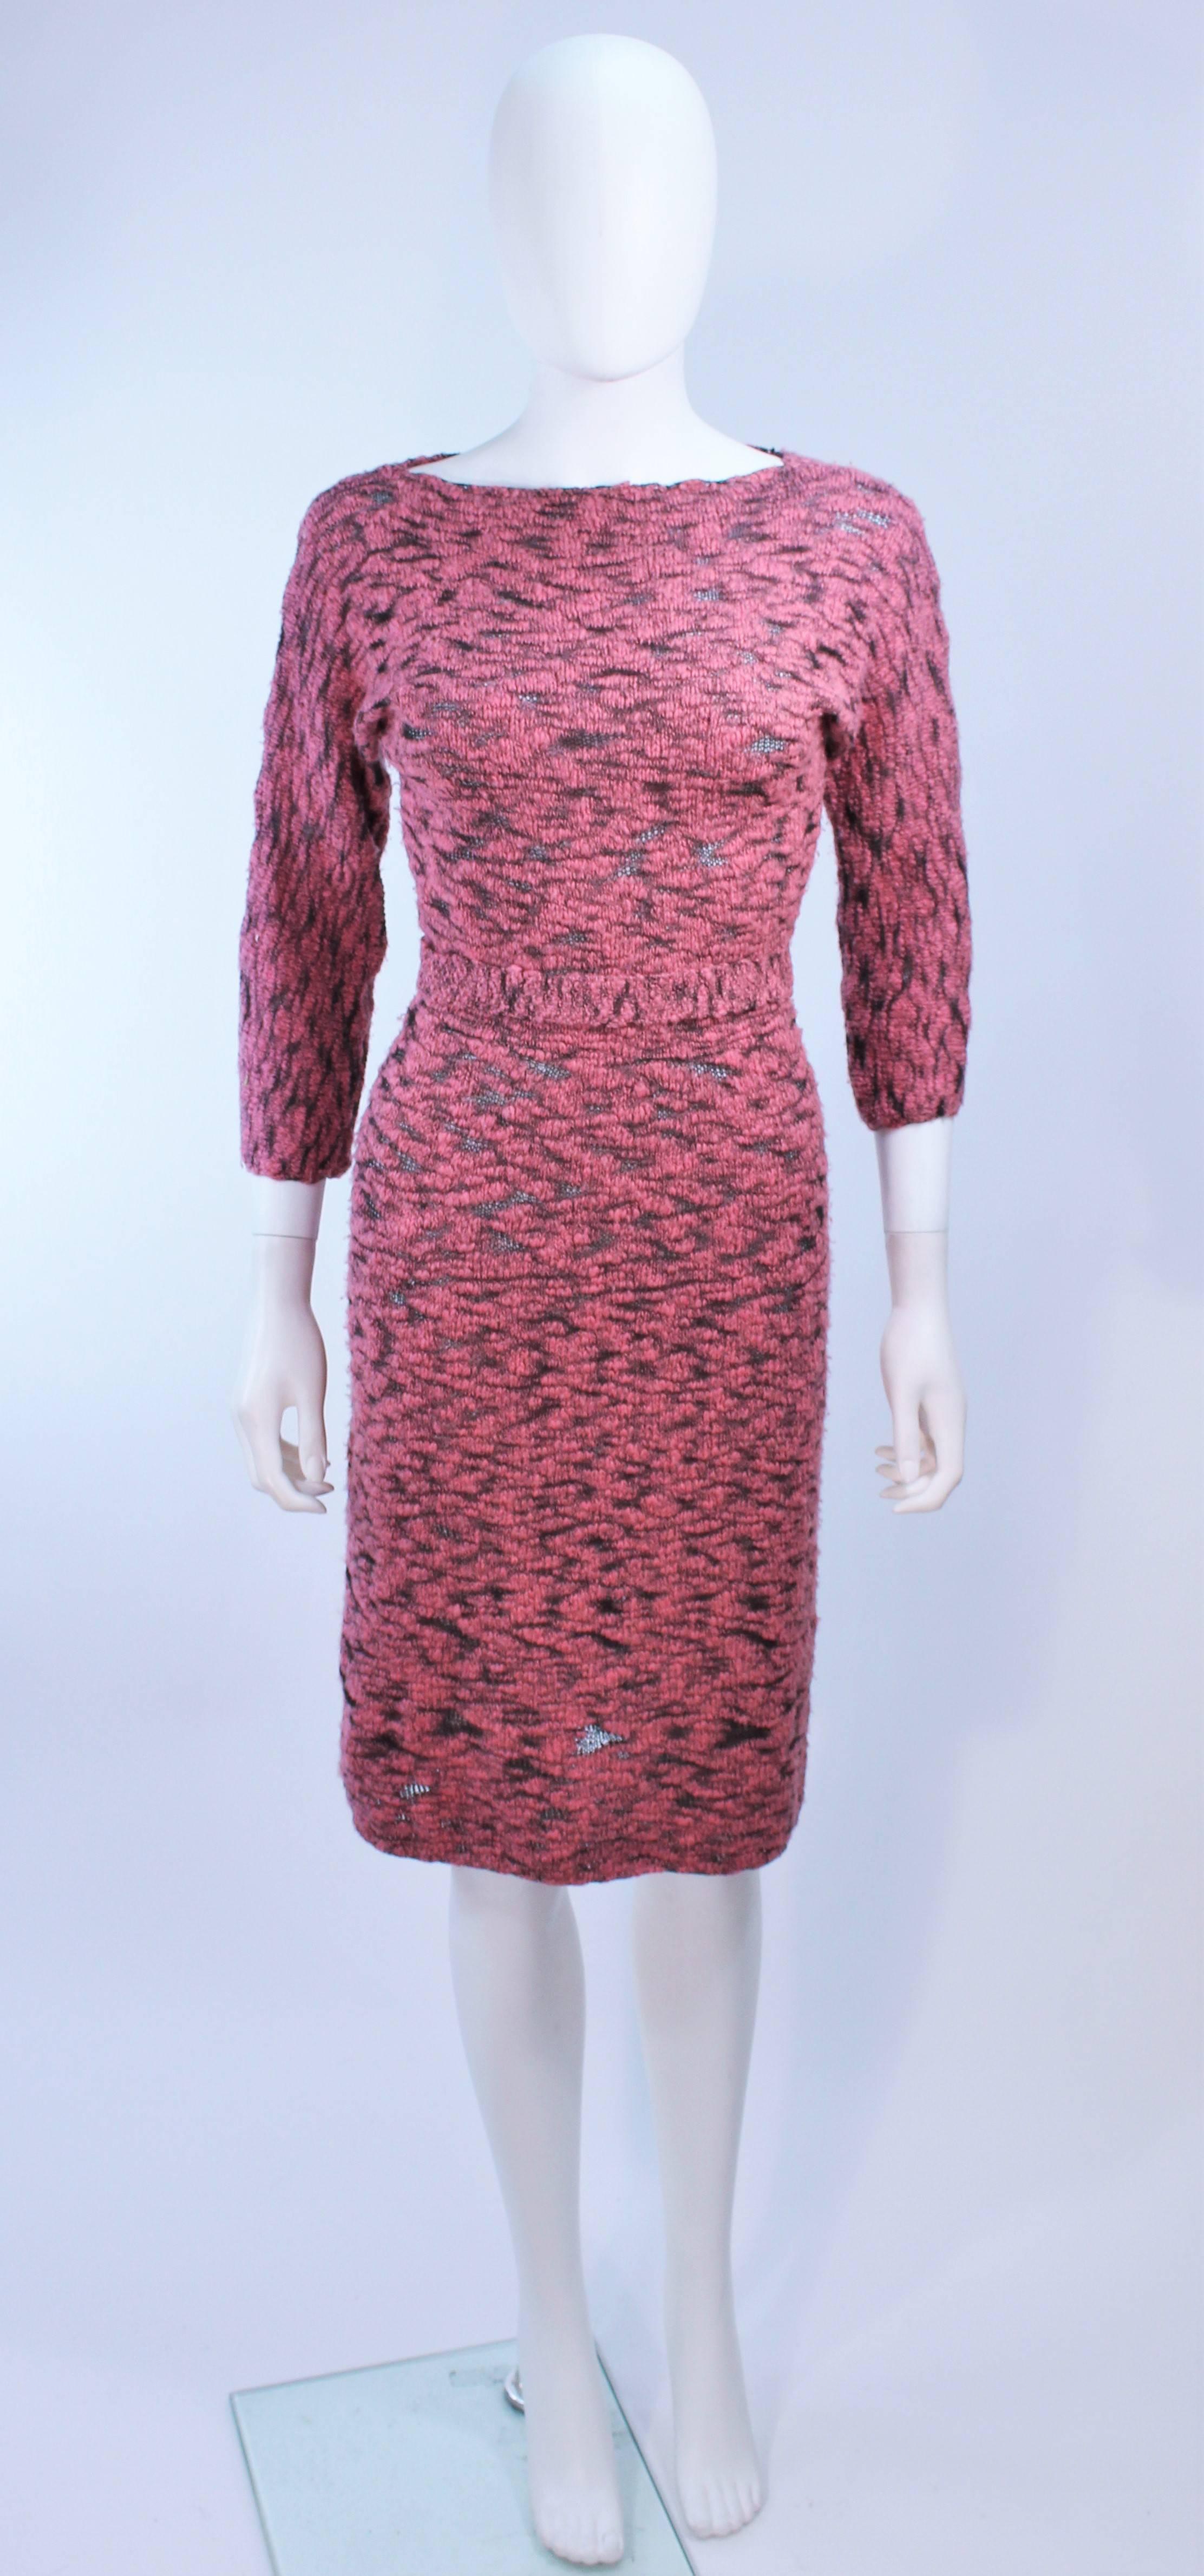 Cette robe Sydney's est composée d'une laine stretch rose et noire. Le modèle est semi-transparent et comporte une ceinture. Vintage, en excellent état.

**Veuillez croiser les mesures pour une précision personnelle. La taille indiquée dans la